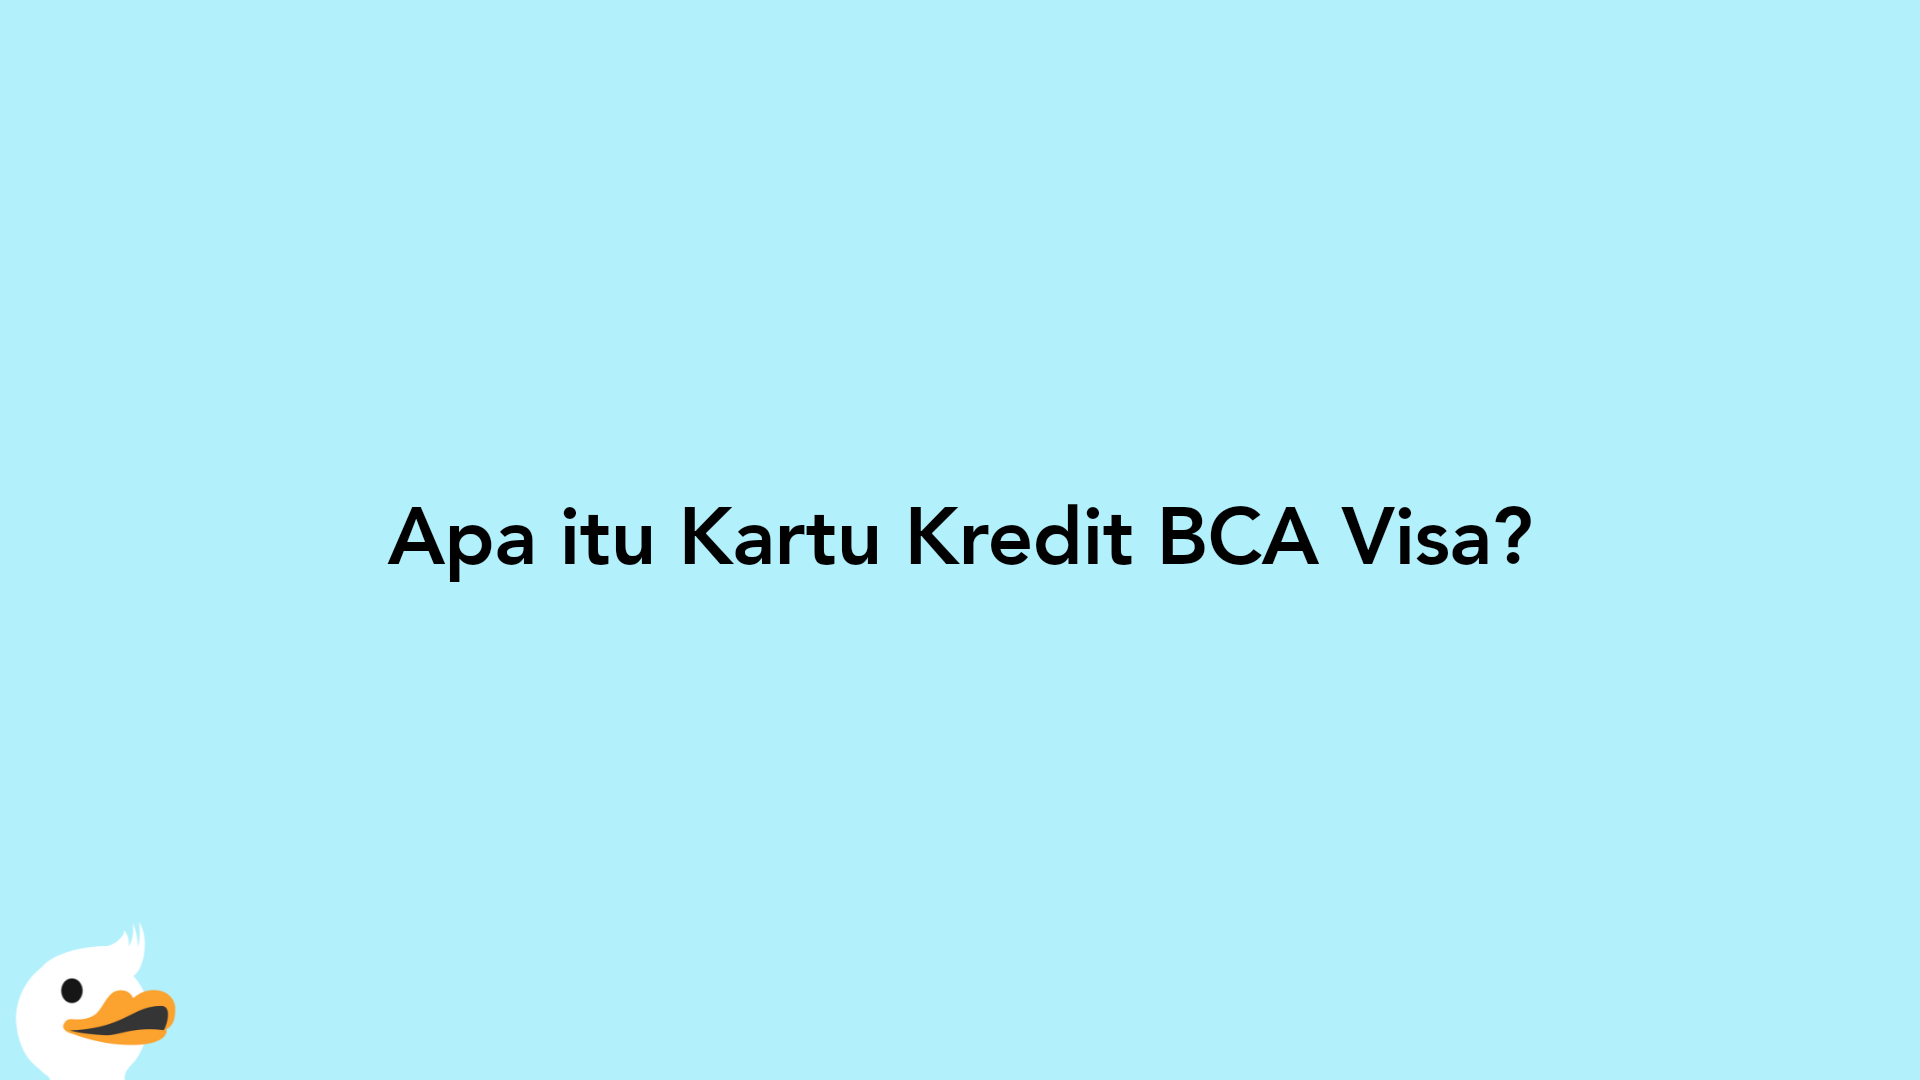 Apa itu Kartu Kredit BCA Visa?